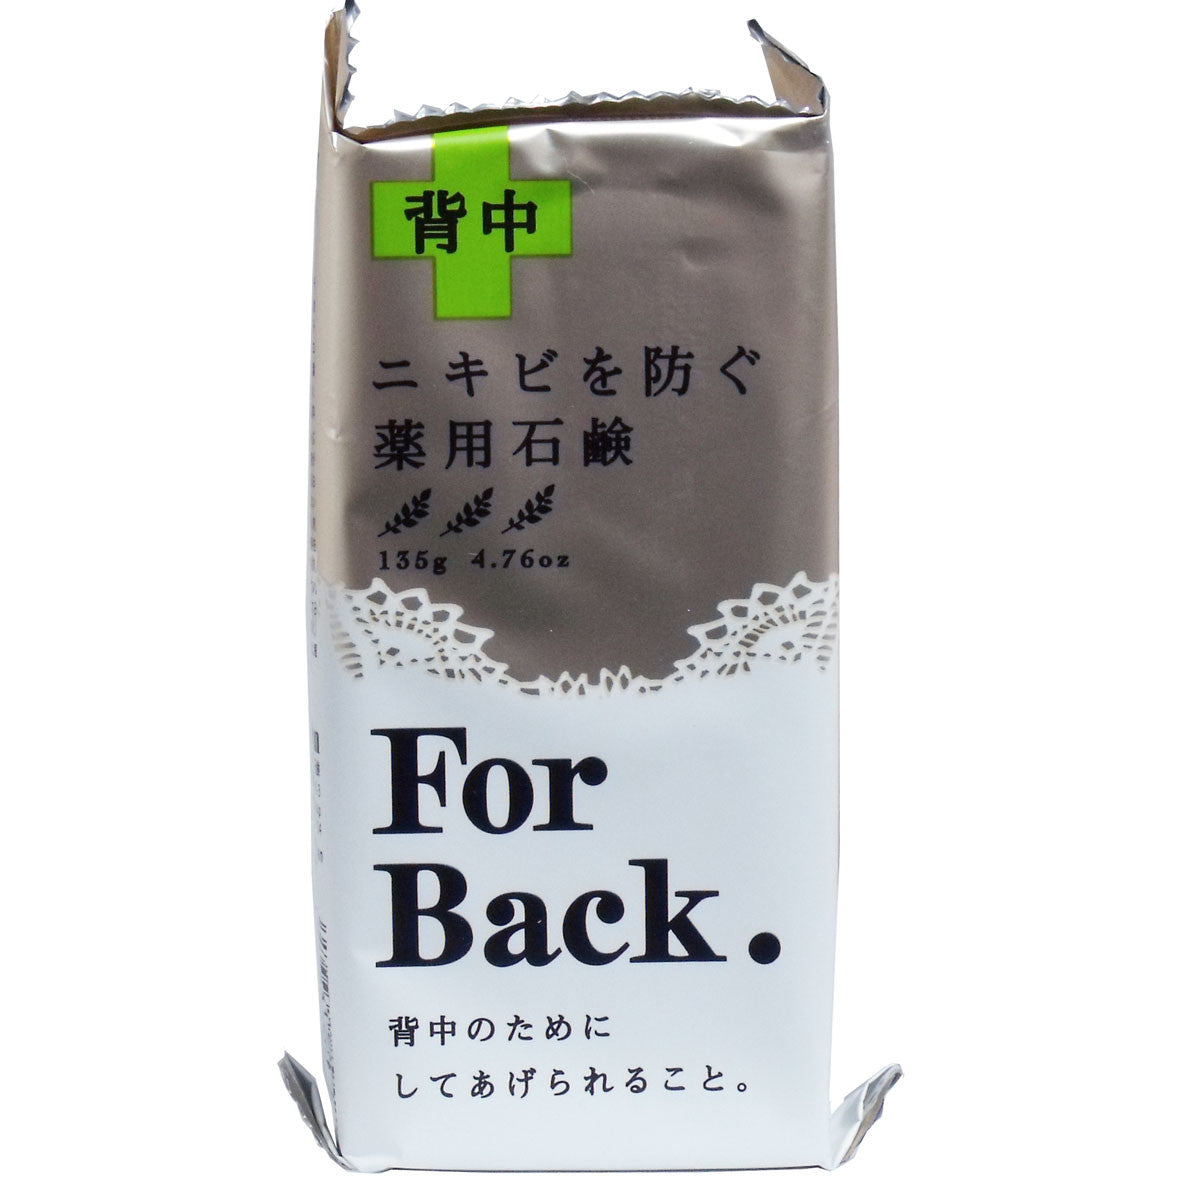 薬用石鹸 ForBack (フォーバック) 135g